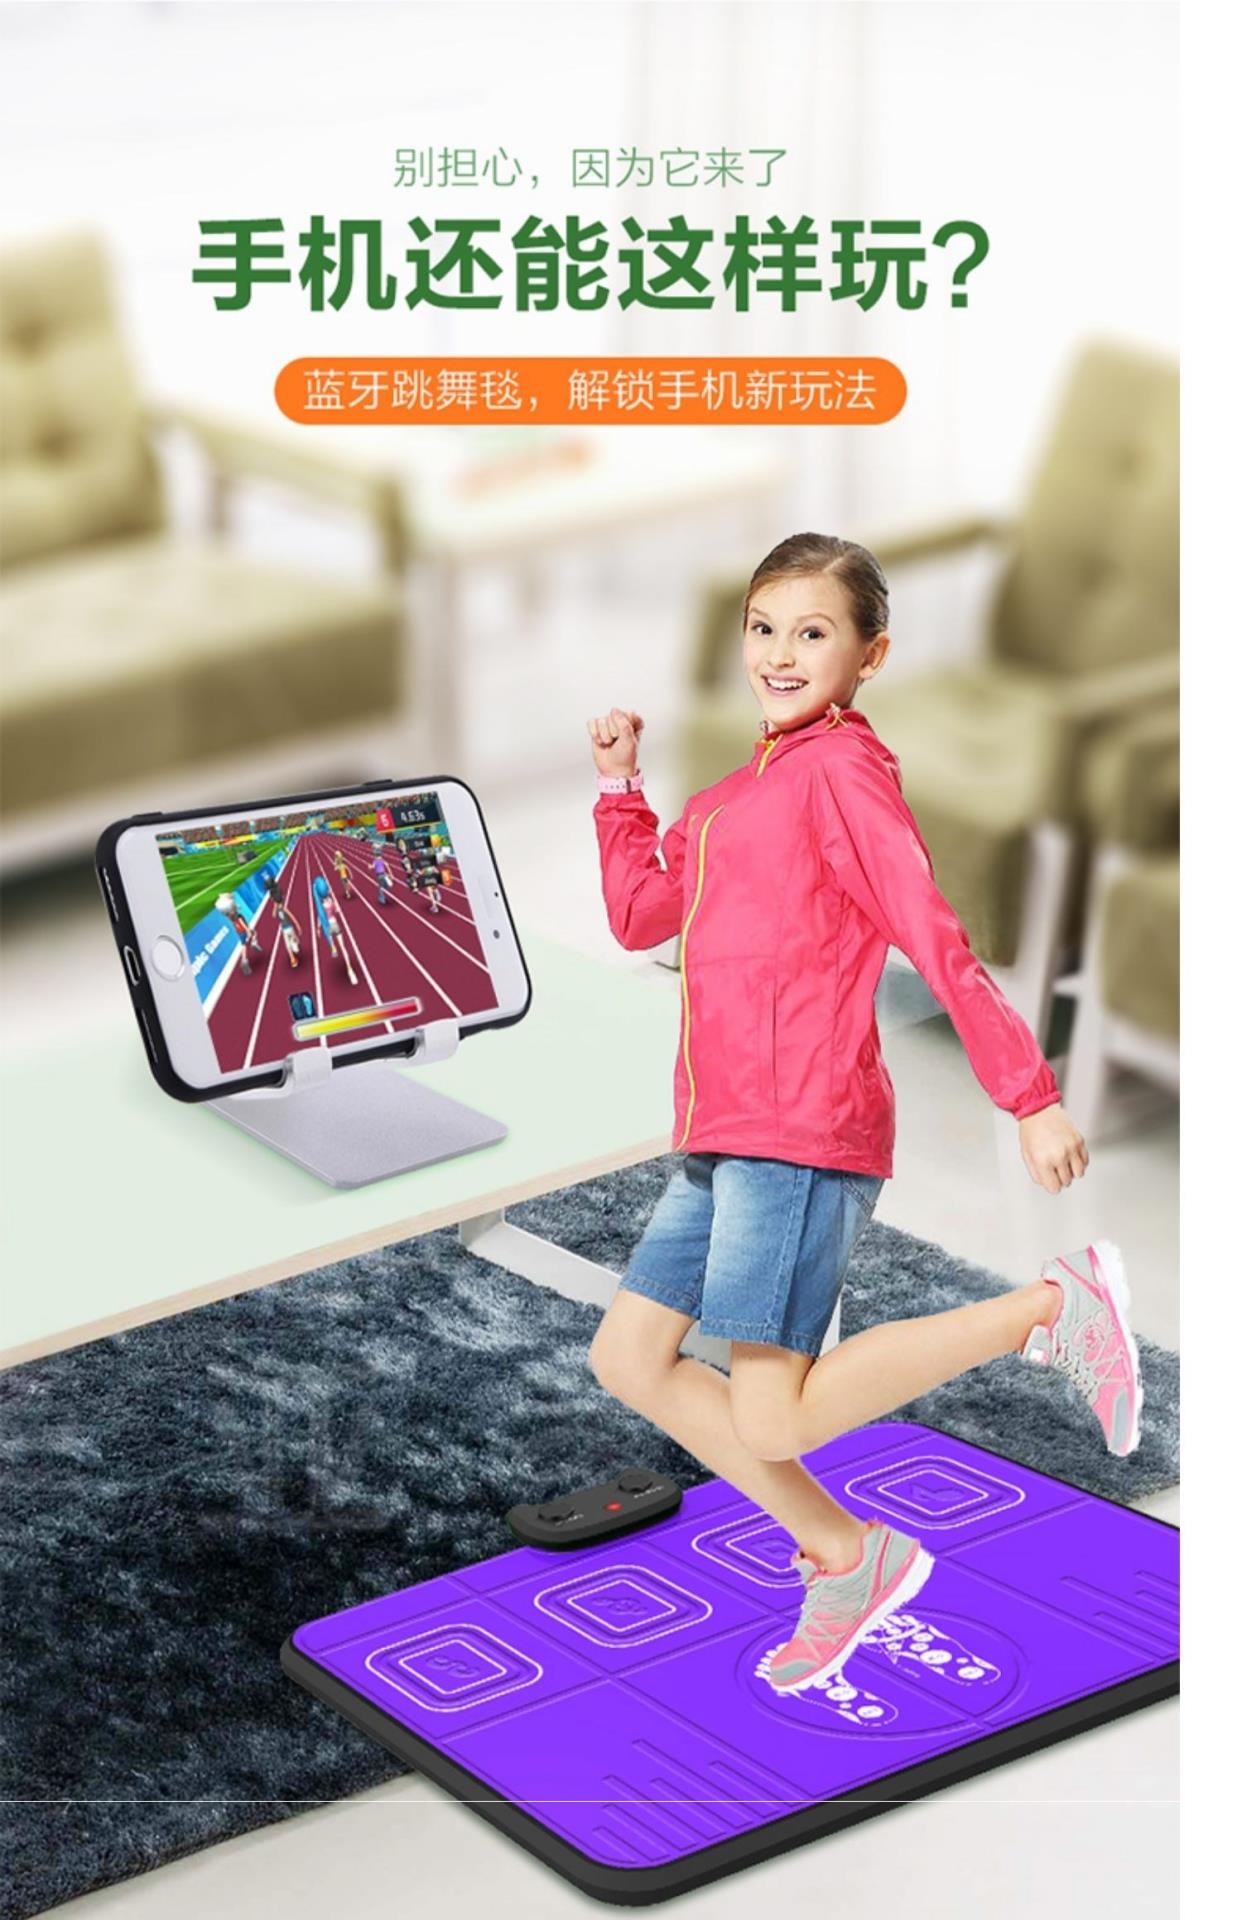 . Dancing mat TV giao diện máy tính sử dụng kép máy nhảy không dây kép tại nhà somatosensory chạy trò chơi điều khiển trò chơi - Dance pad